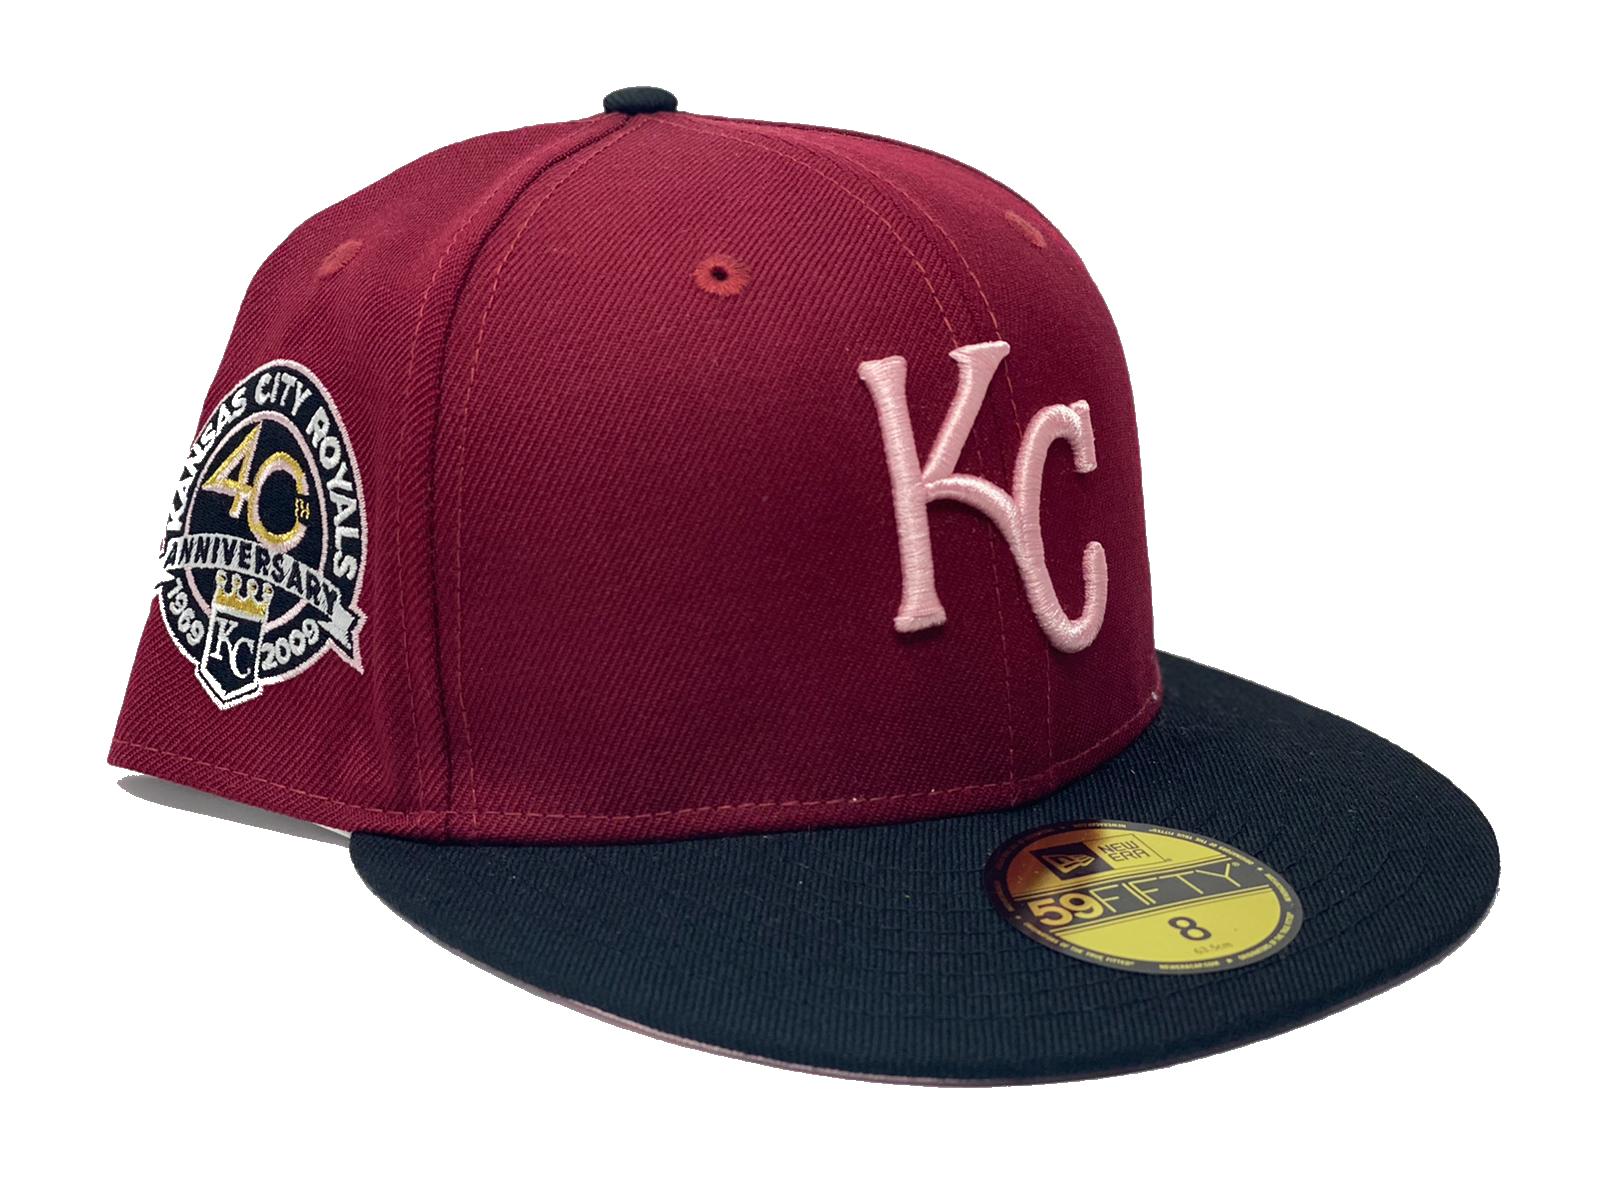 Royals Hat, Kansas City Royals Hats, Baseball Caps